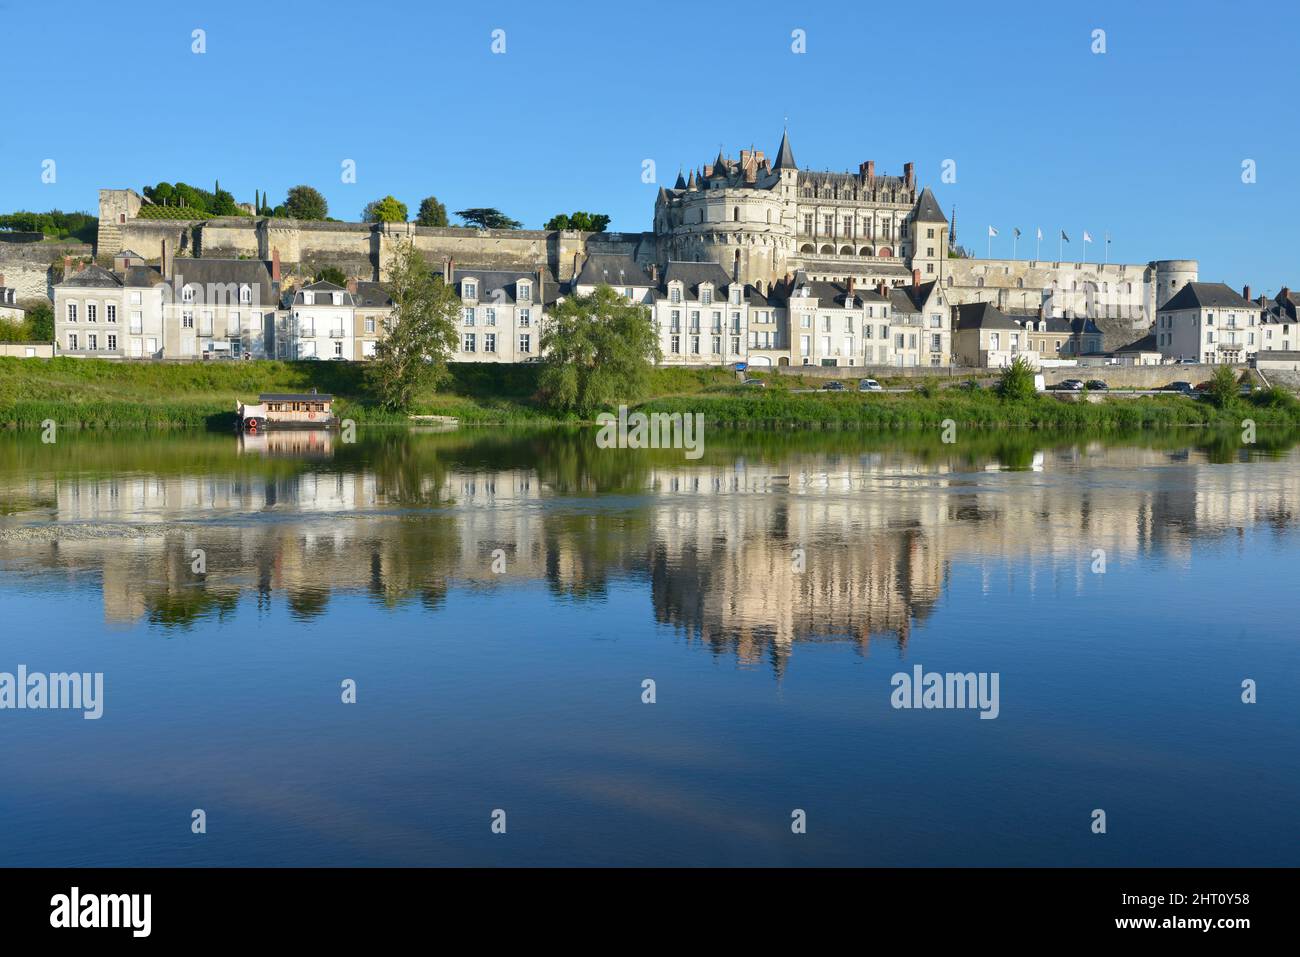 Prachtvolles Schloss, das mit seinen Reflexionen an der Loire in Amboise, einer Gemeinde im Département Indre-et-Loire in Zentralfrankreich, sehr berühmt ist. Stockfoto